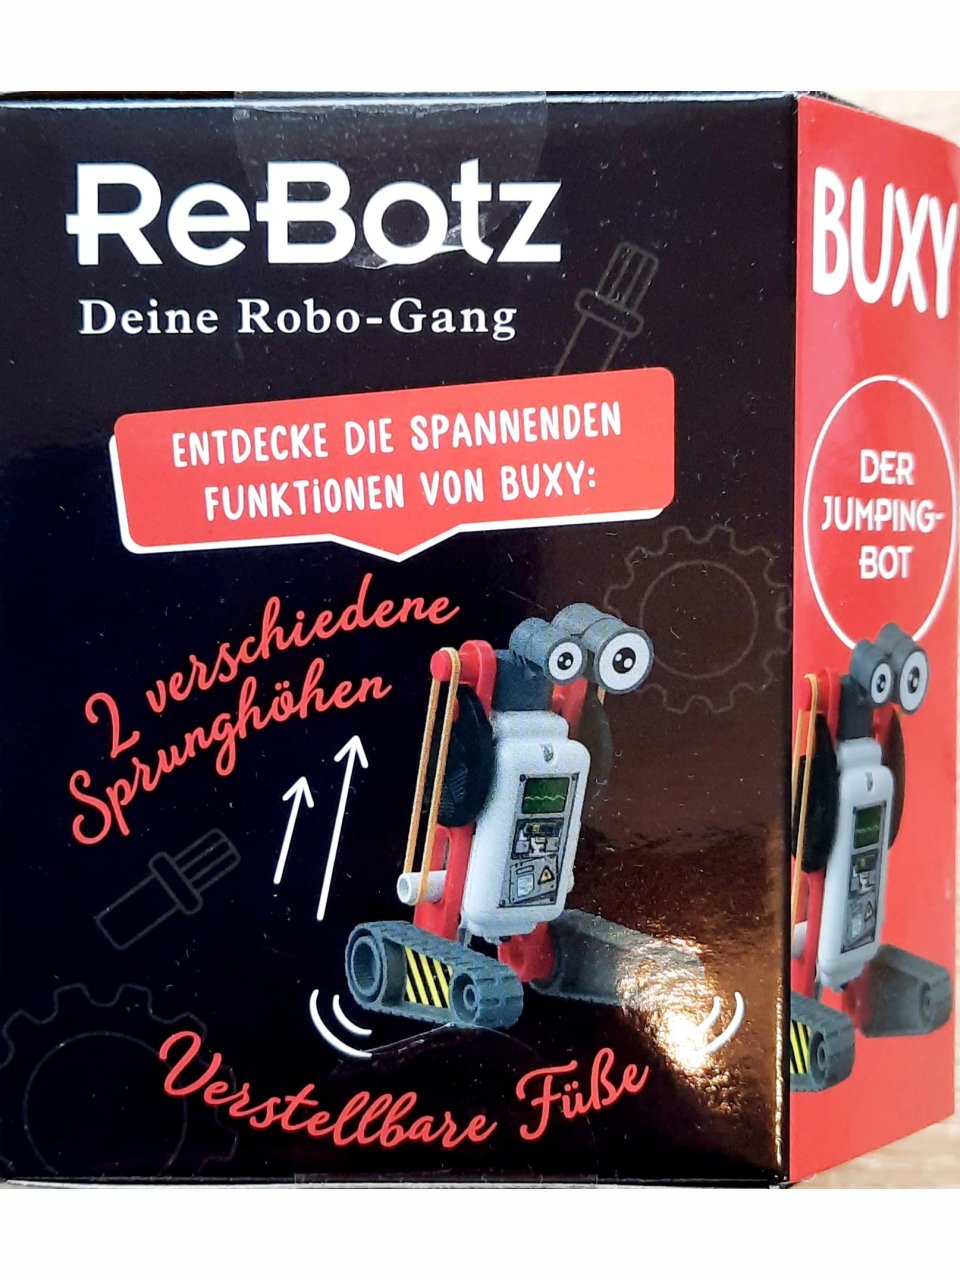 ReBotz – Buxy der Jumping Bot